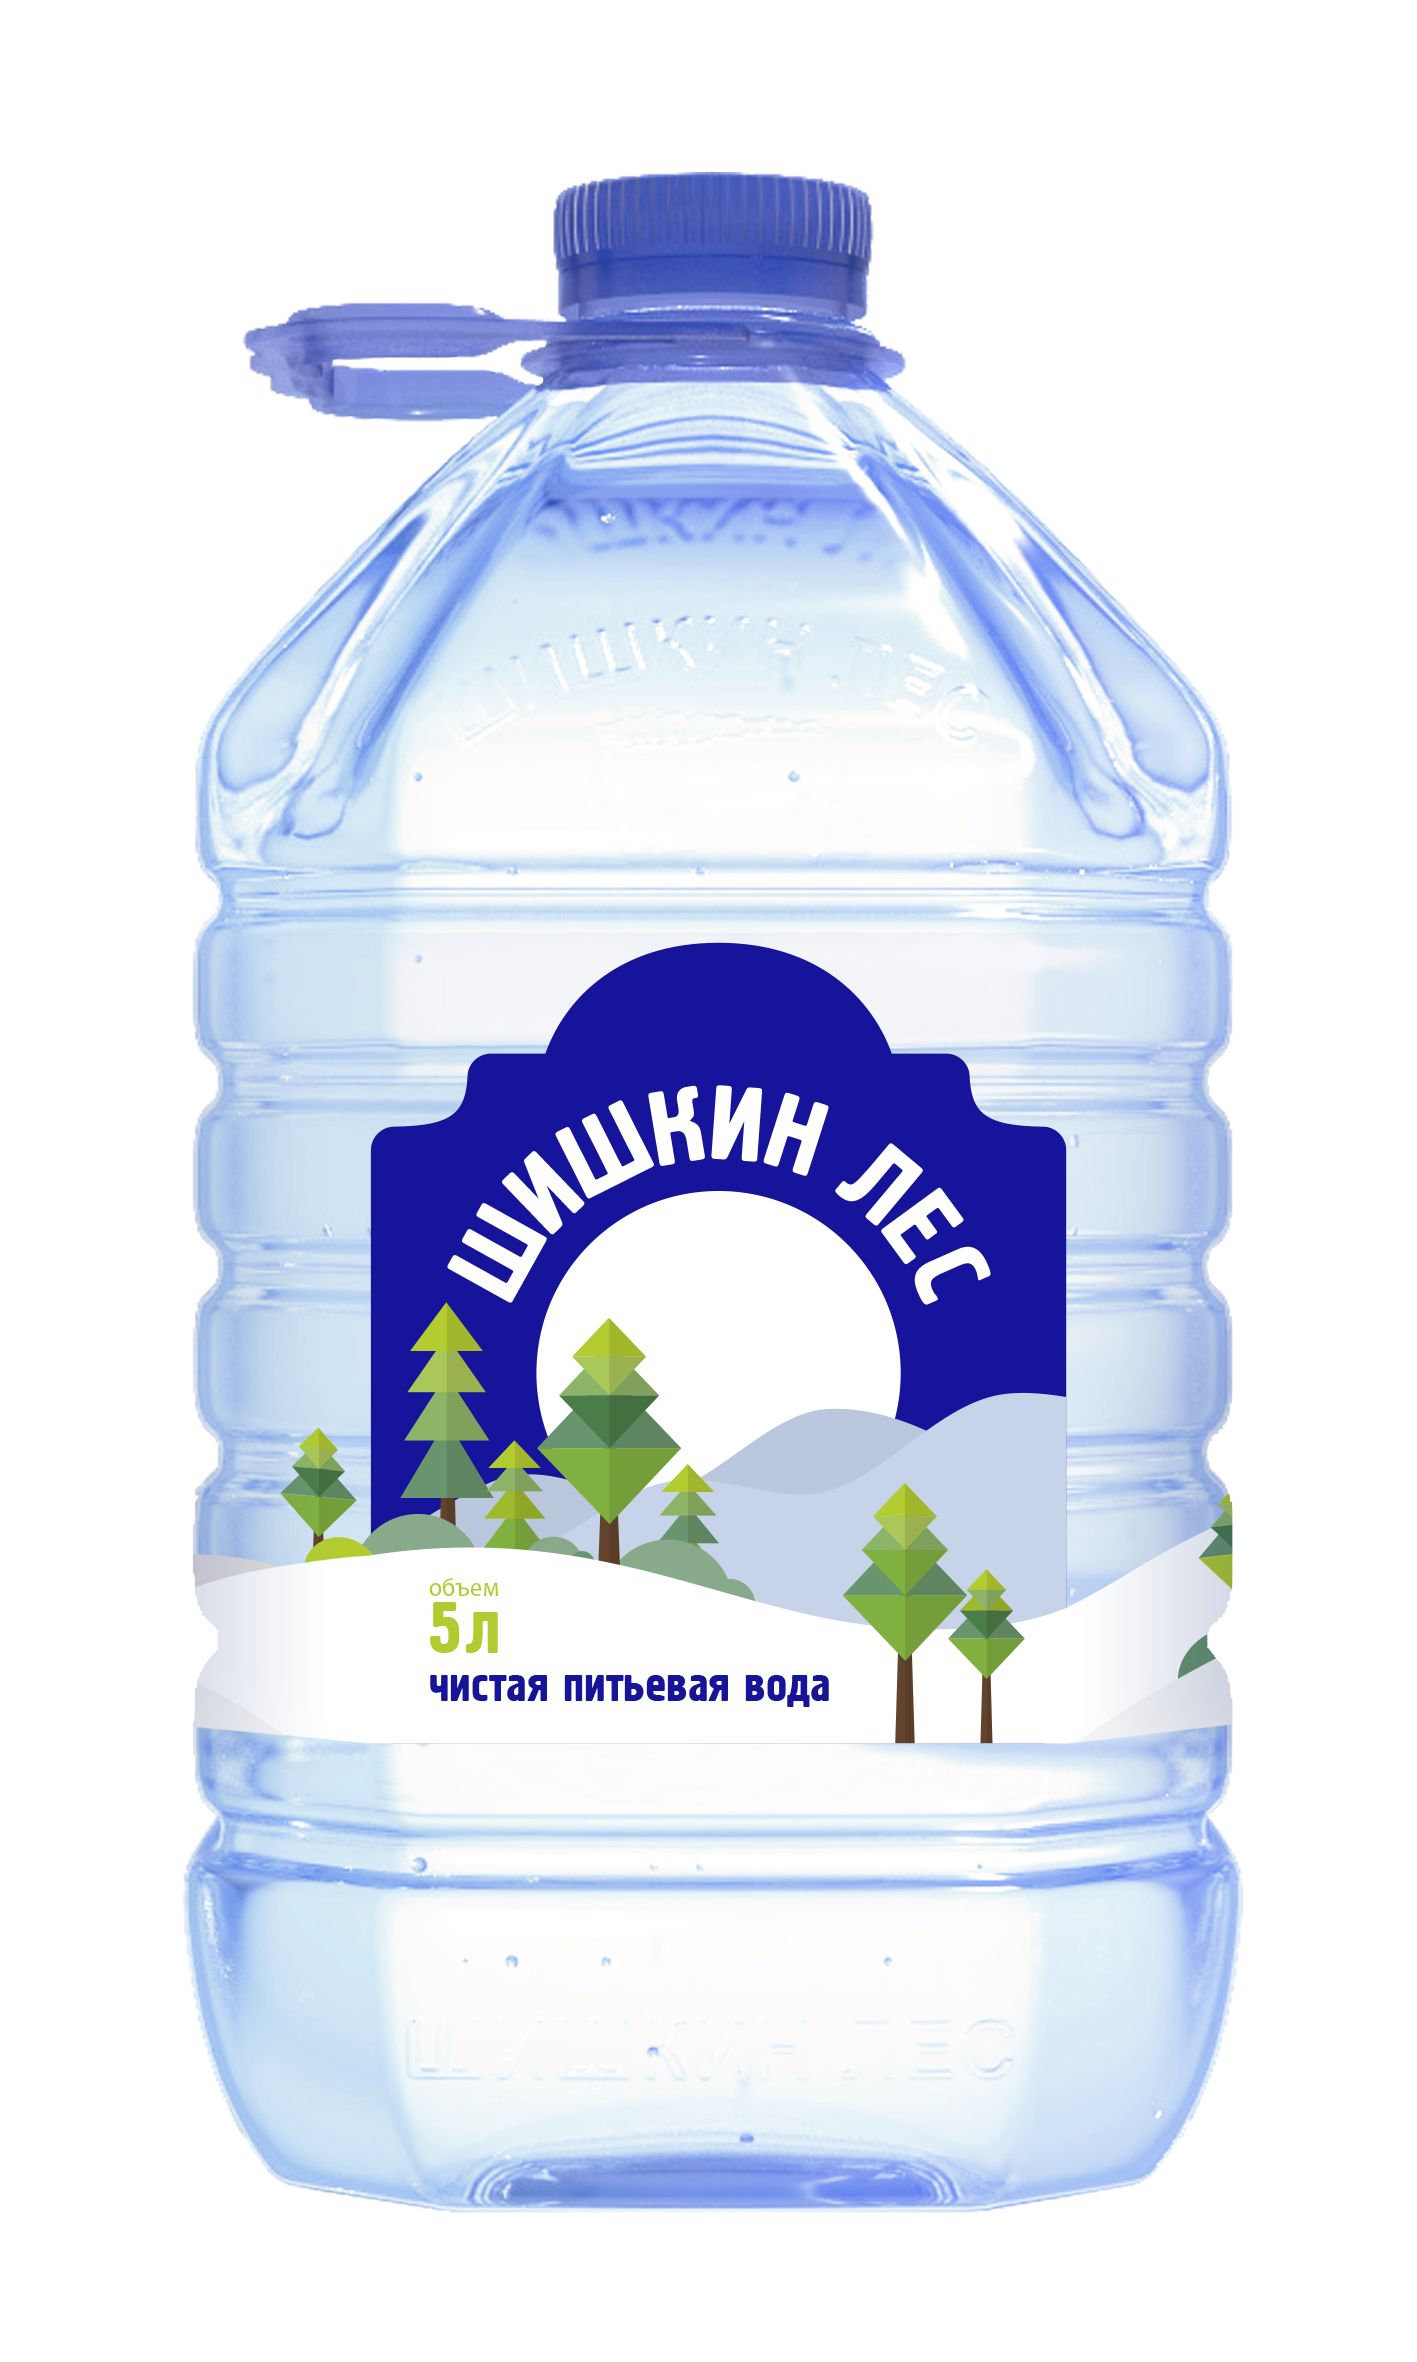 Вода Шишкин лес 5 литров